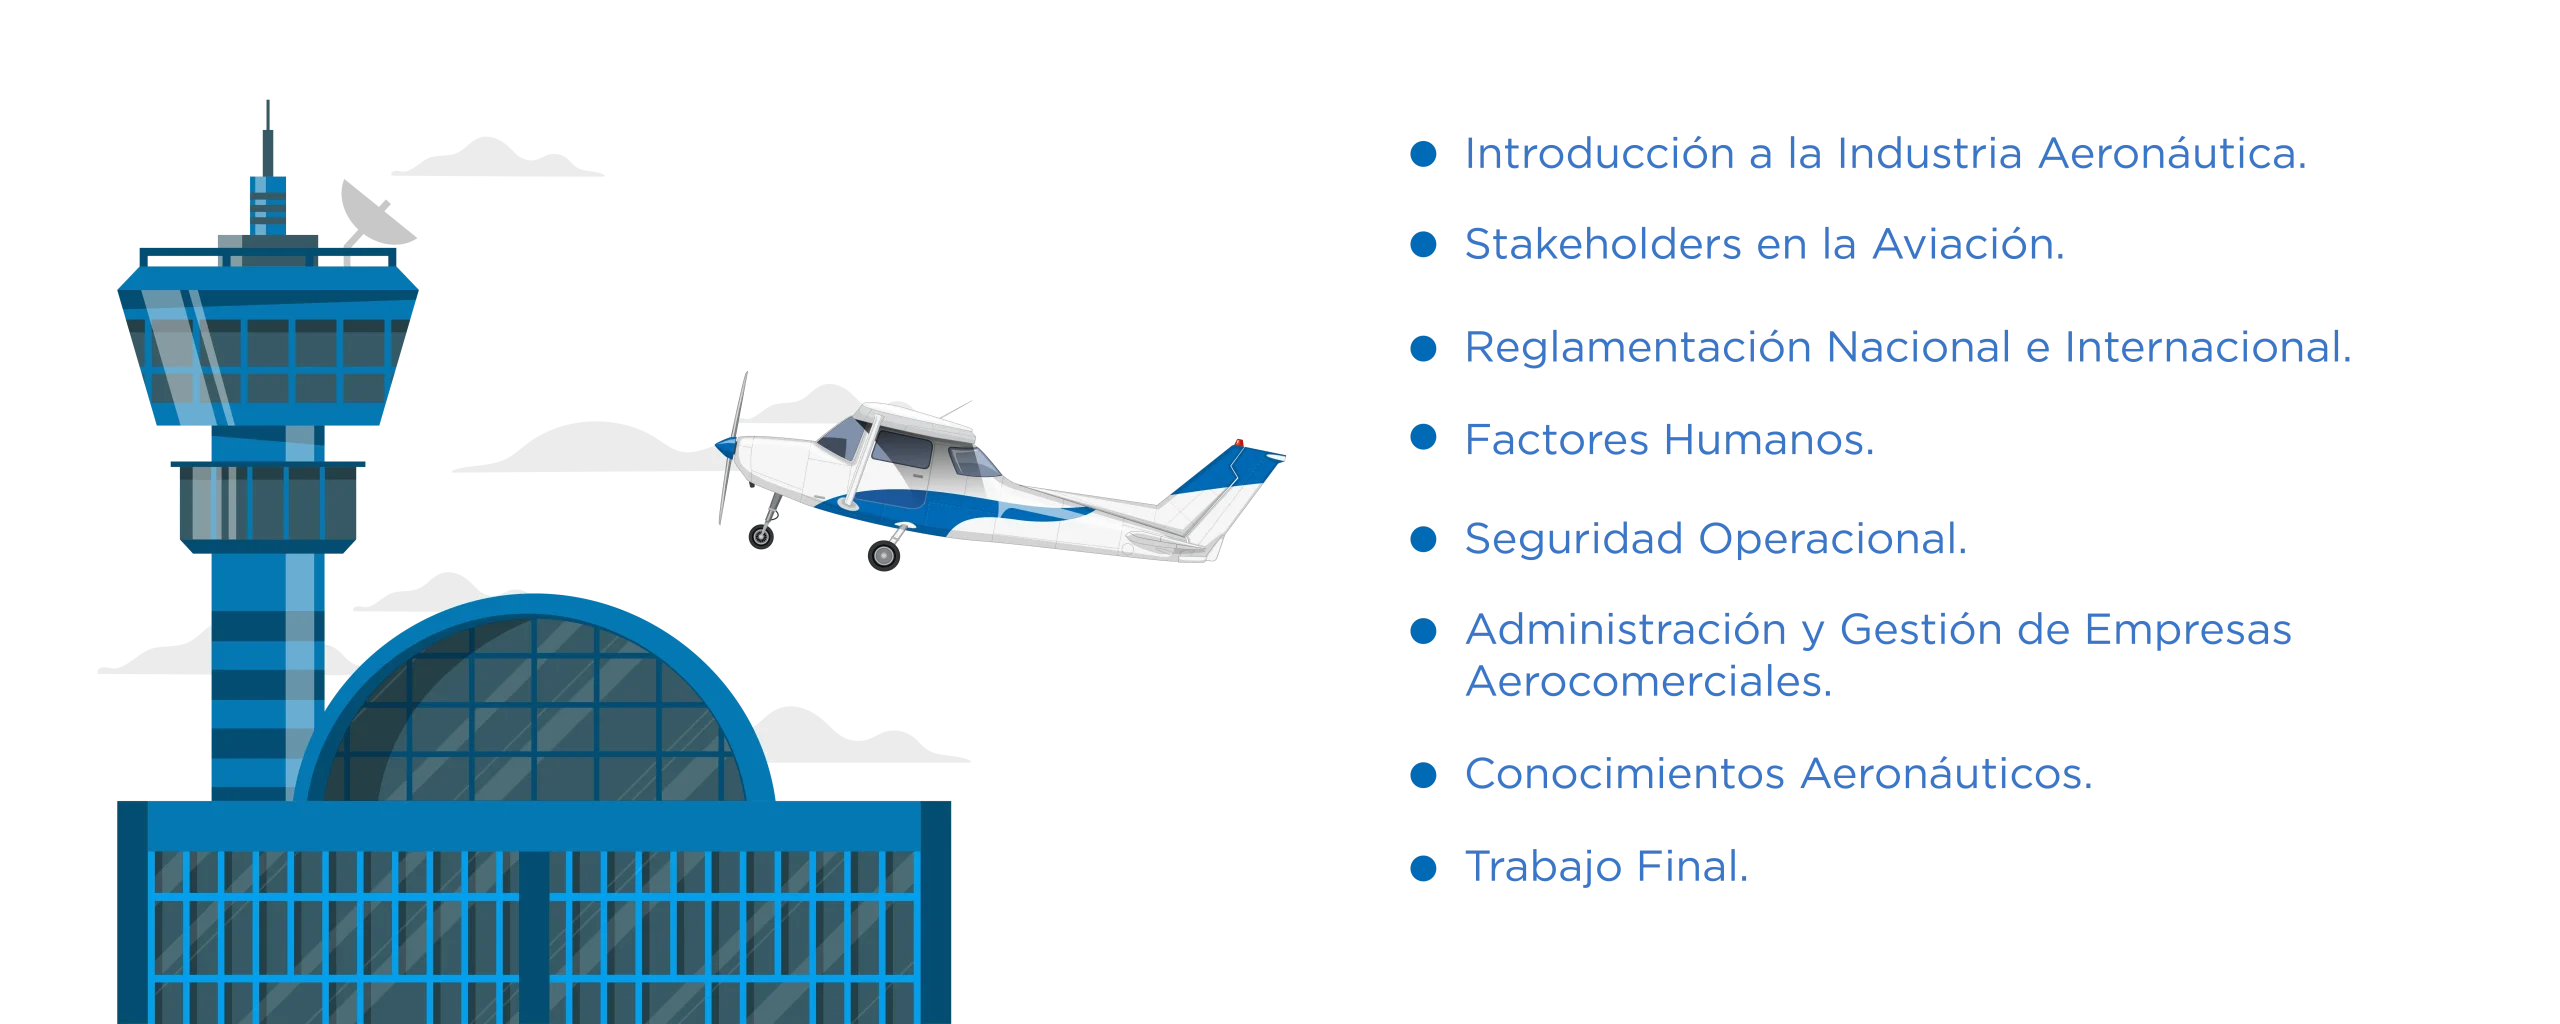 Plan de Estudios Industria Aeronáutica